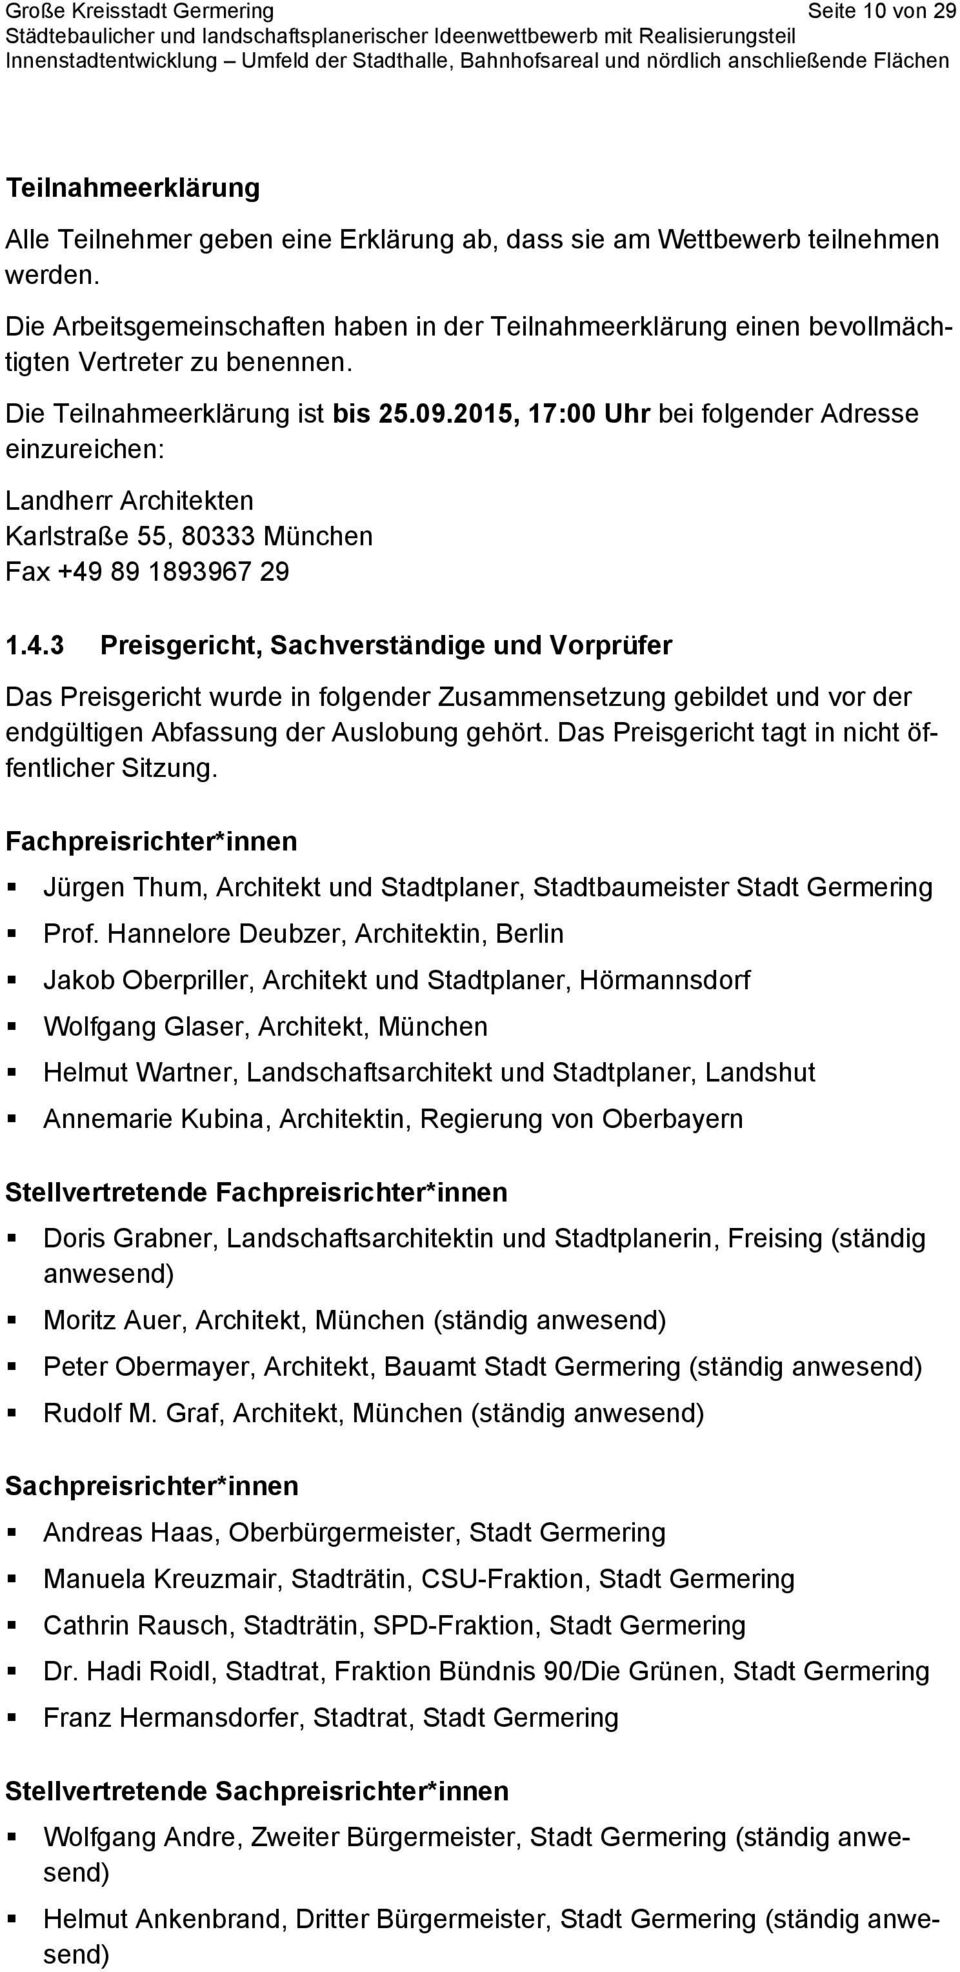 2015, 17:00 Uhr bei folgender Adresse einzureichen: Landherr Architekten Karlstraße 55, 80333 München Fax +49